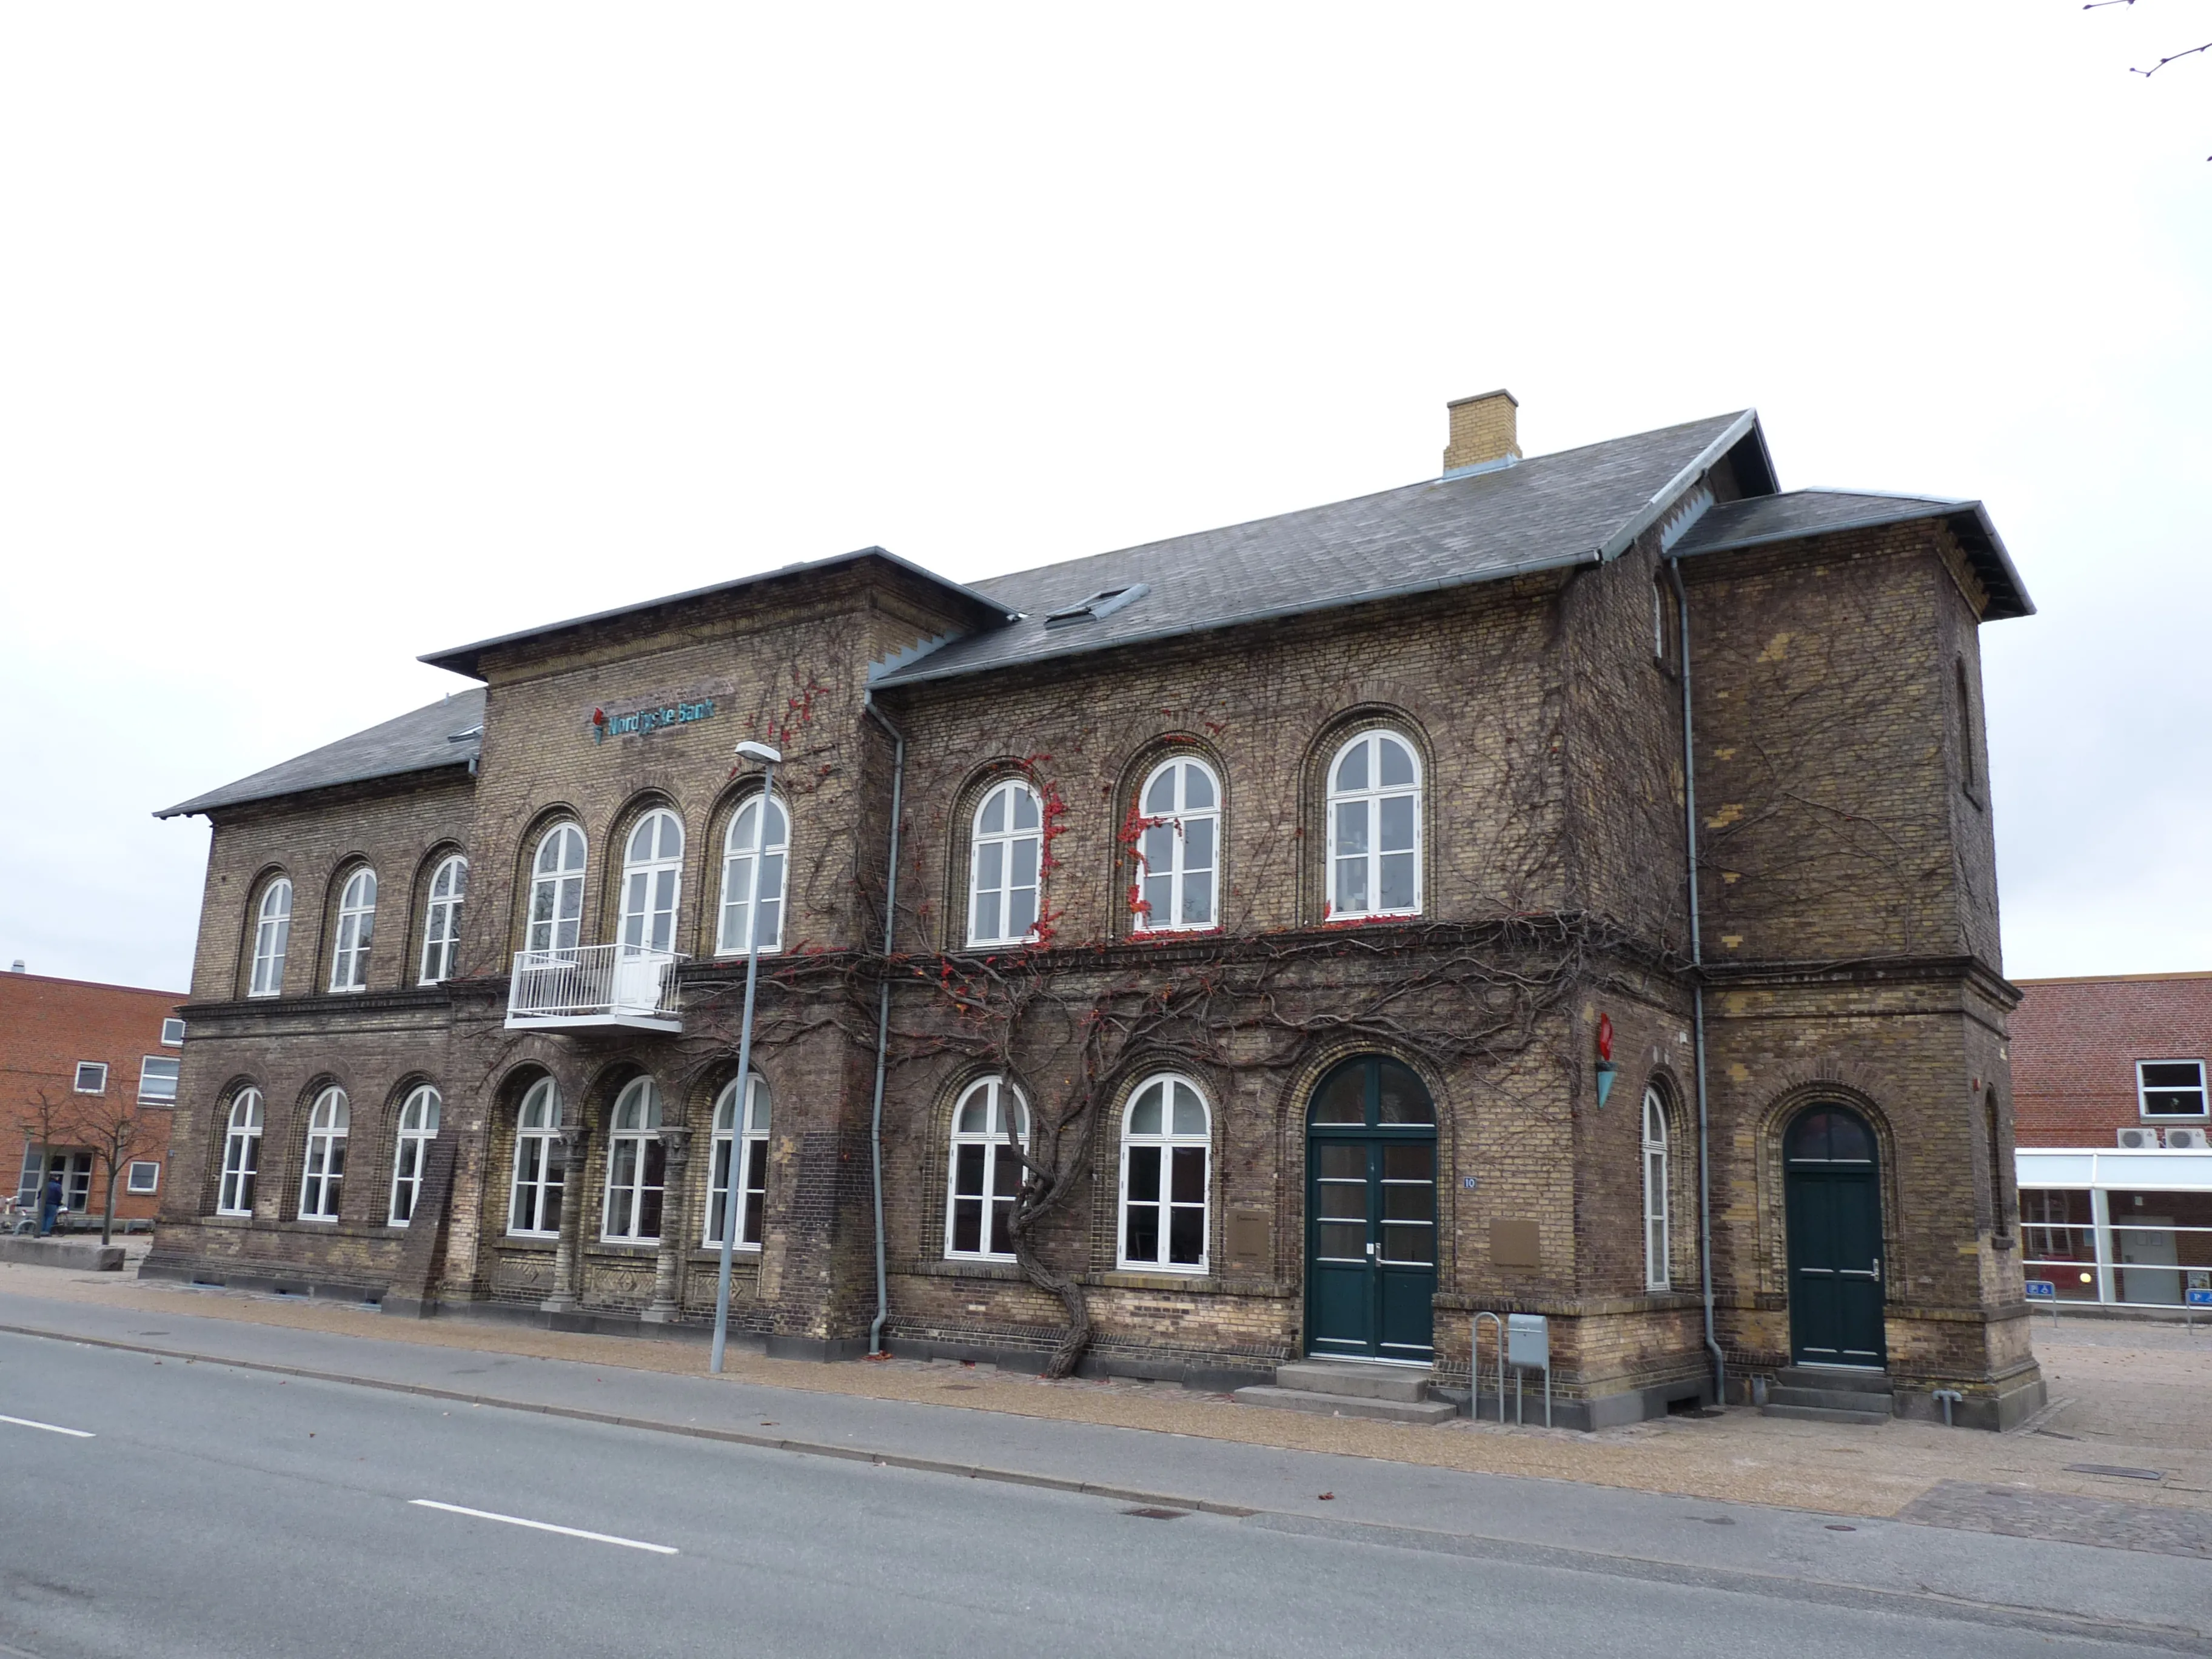 Billede af Frederikshavn Station er nedrevet og der er kun denne postbygning tilbage.